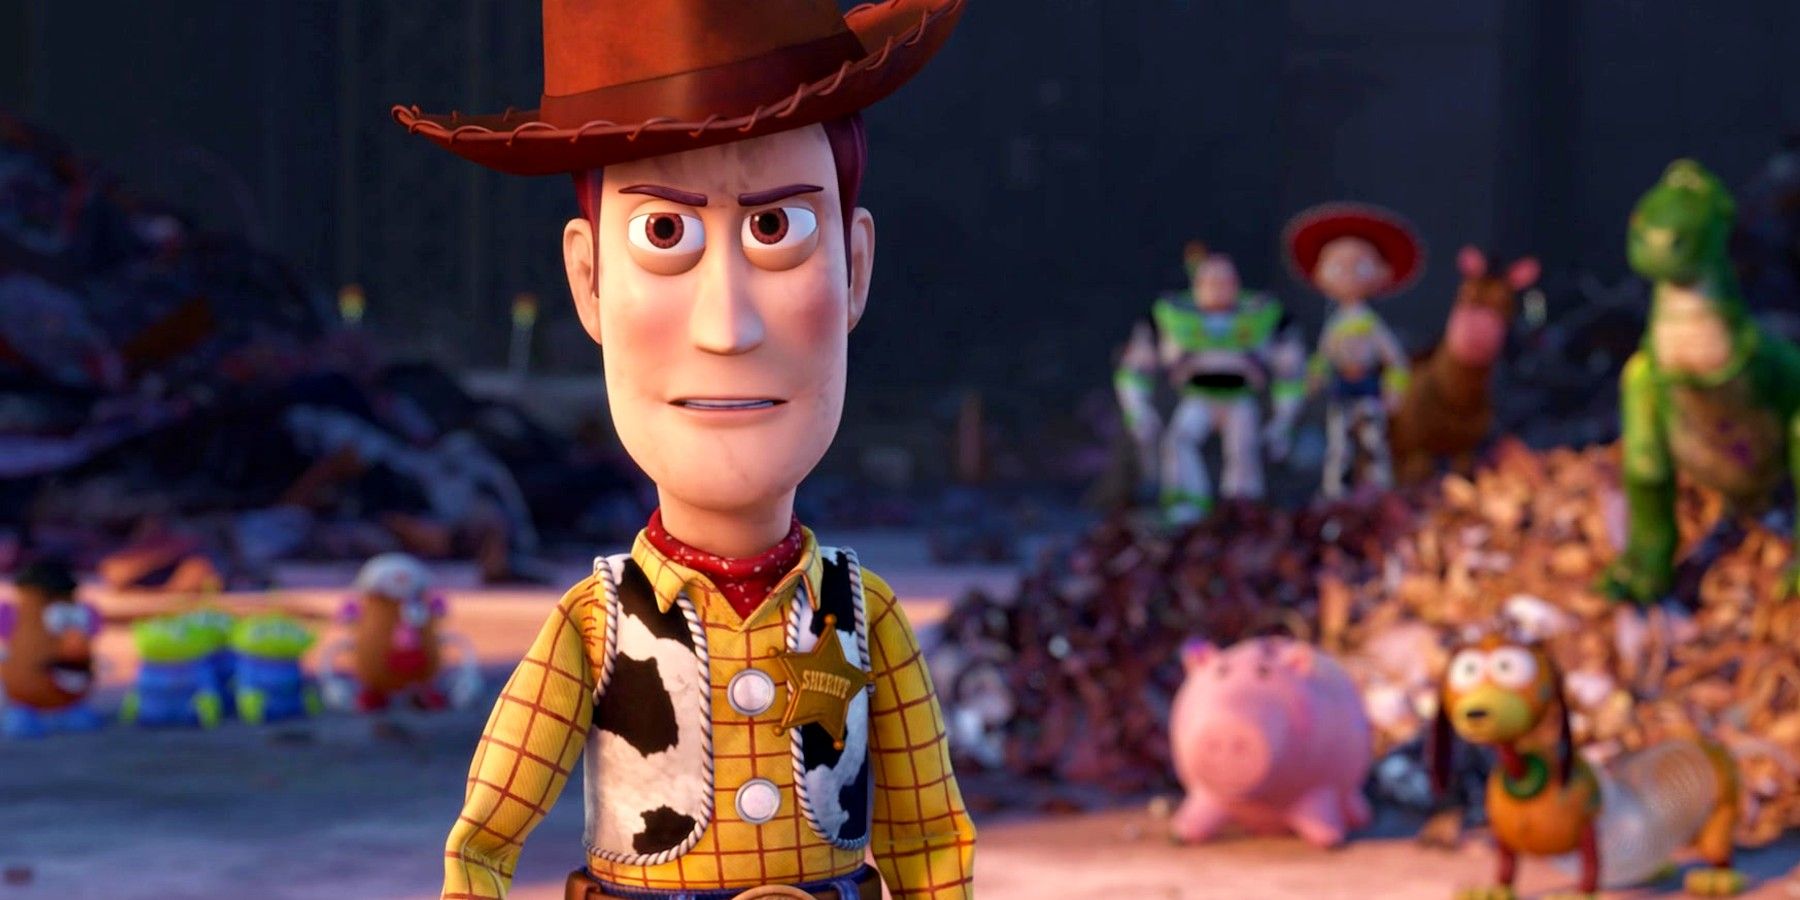 El rumoreado regreso del personaje de Toy Story 5 enfurece a Internet por el flaco favor al final de Toy Story 3